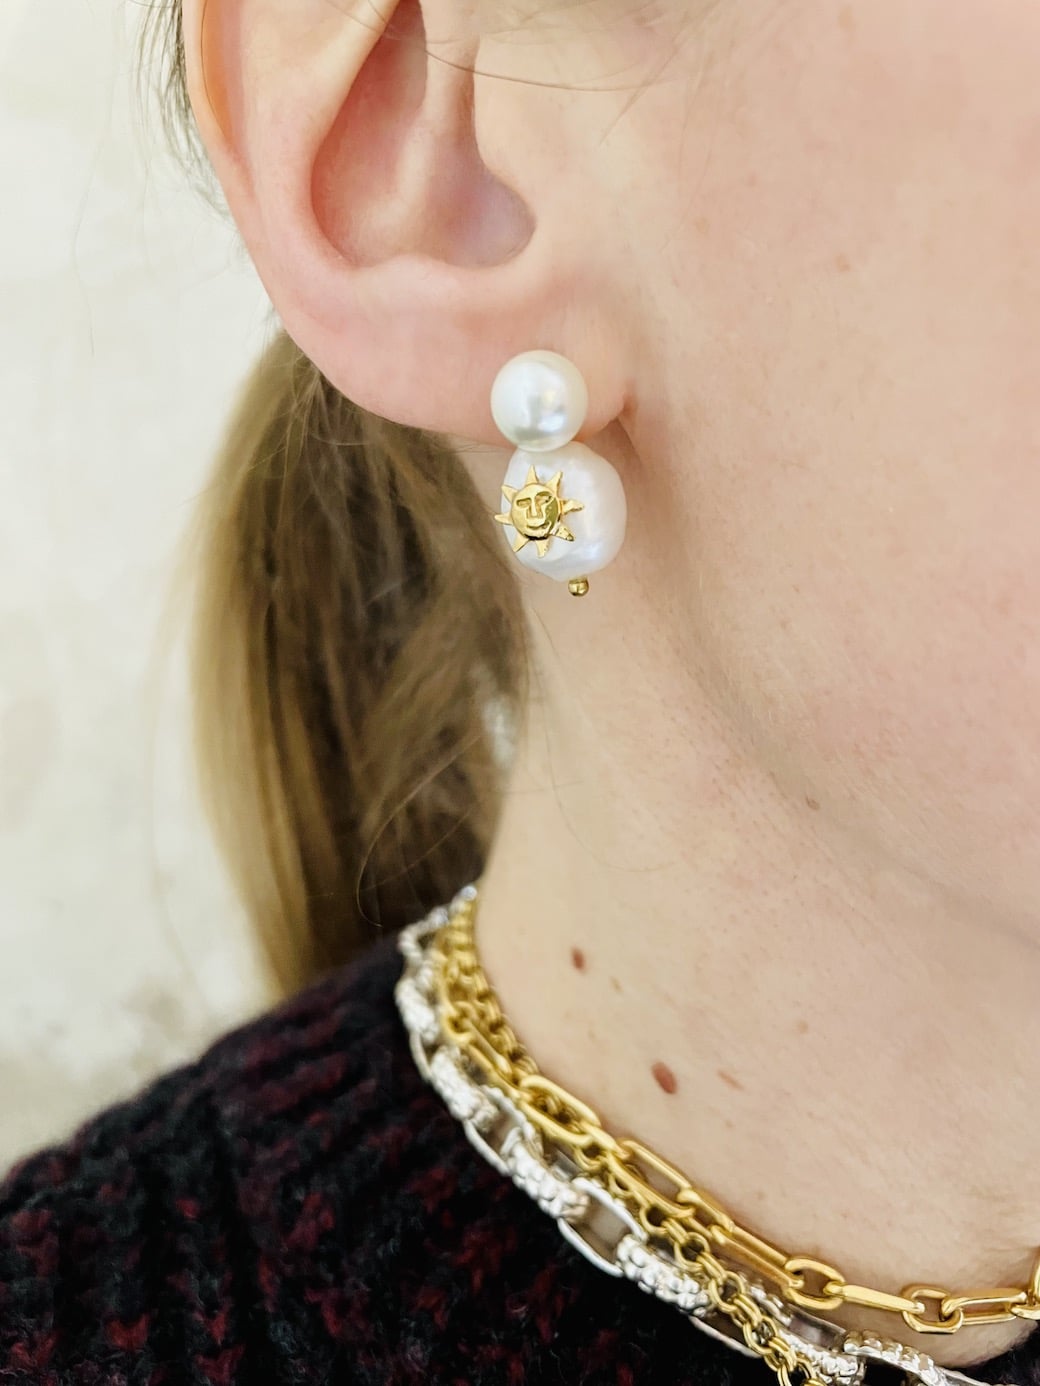 Boucles d'oreilles Mini Solal perles blanches by Sande Paris